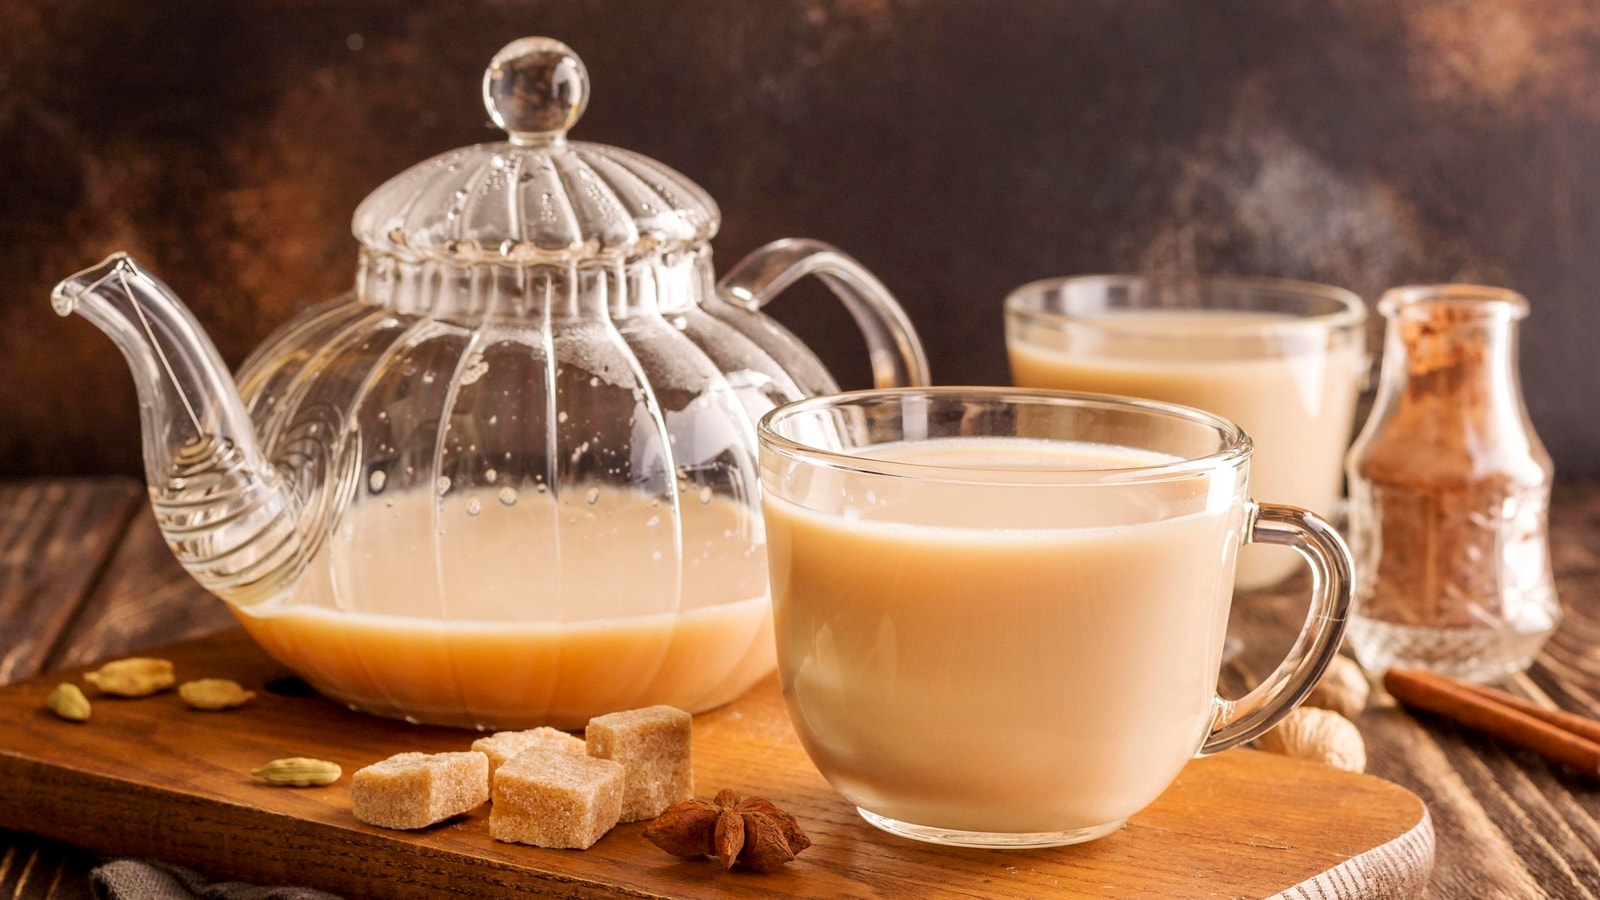 ICMR zaleca unikanie herbaty mlecznej;  sugeruje, kiedy pić herbatę i kawę, budzi obawy dotyczące nadmiernego spożycia w nowych wytycznych |  Zdrowie